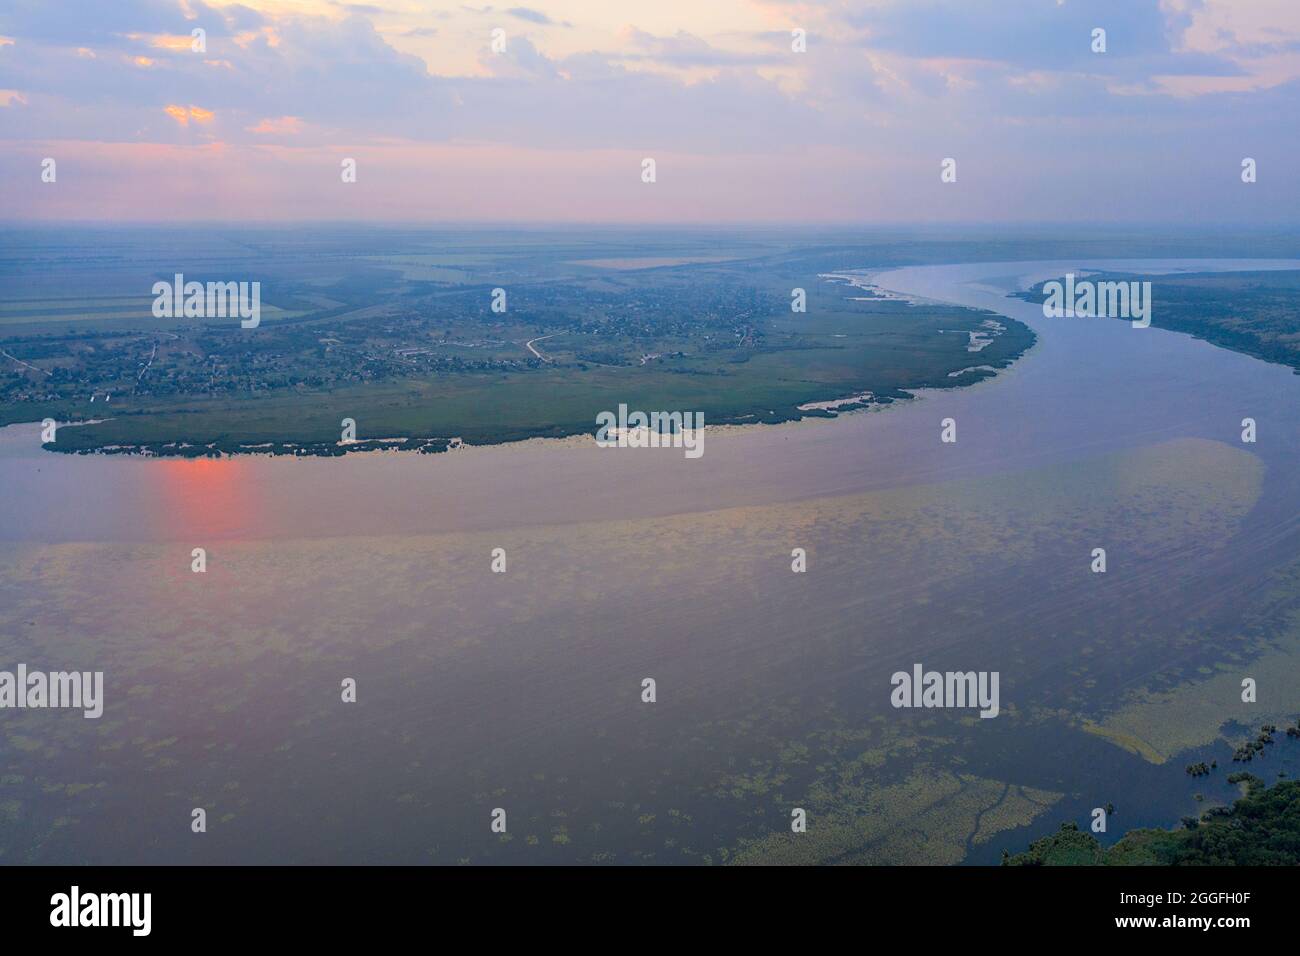 Il sonnolento fiume Bug meridionale si sveglia ai primi raggi del sole nascente in una giornata estiva. Fotografia aerea, spazio copia. Foto Stock